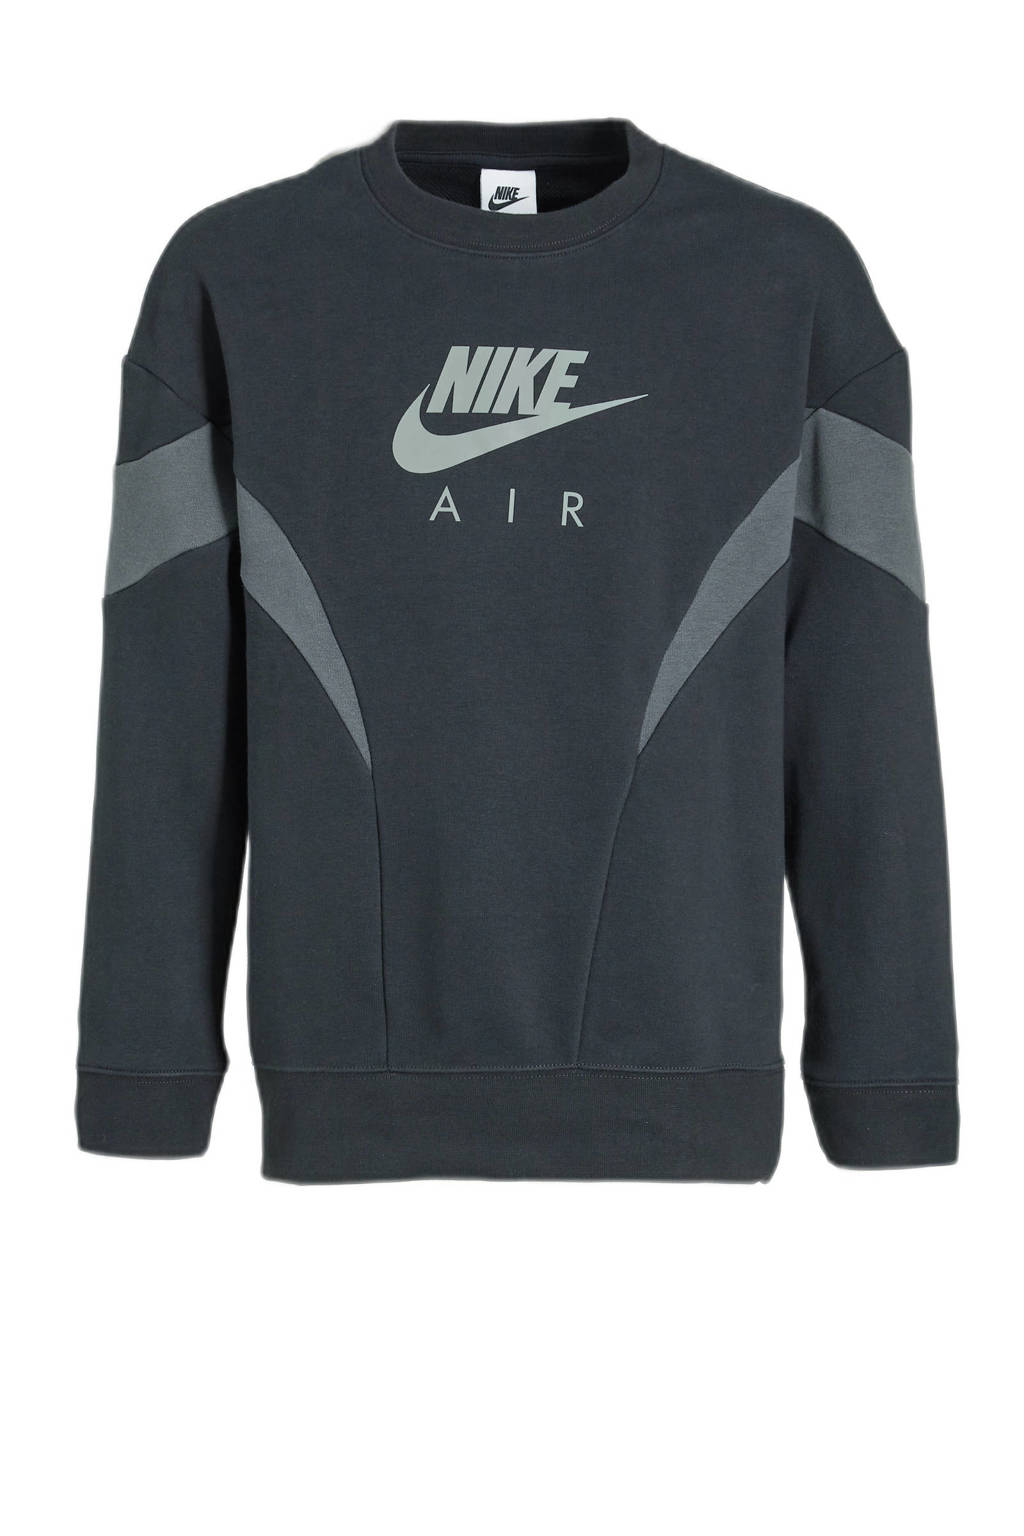 Zwart en grijze meisjes Nike sweater van katoen met logo dessin, lange mouwen, ronde hals en geribde boorden